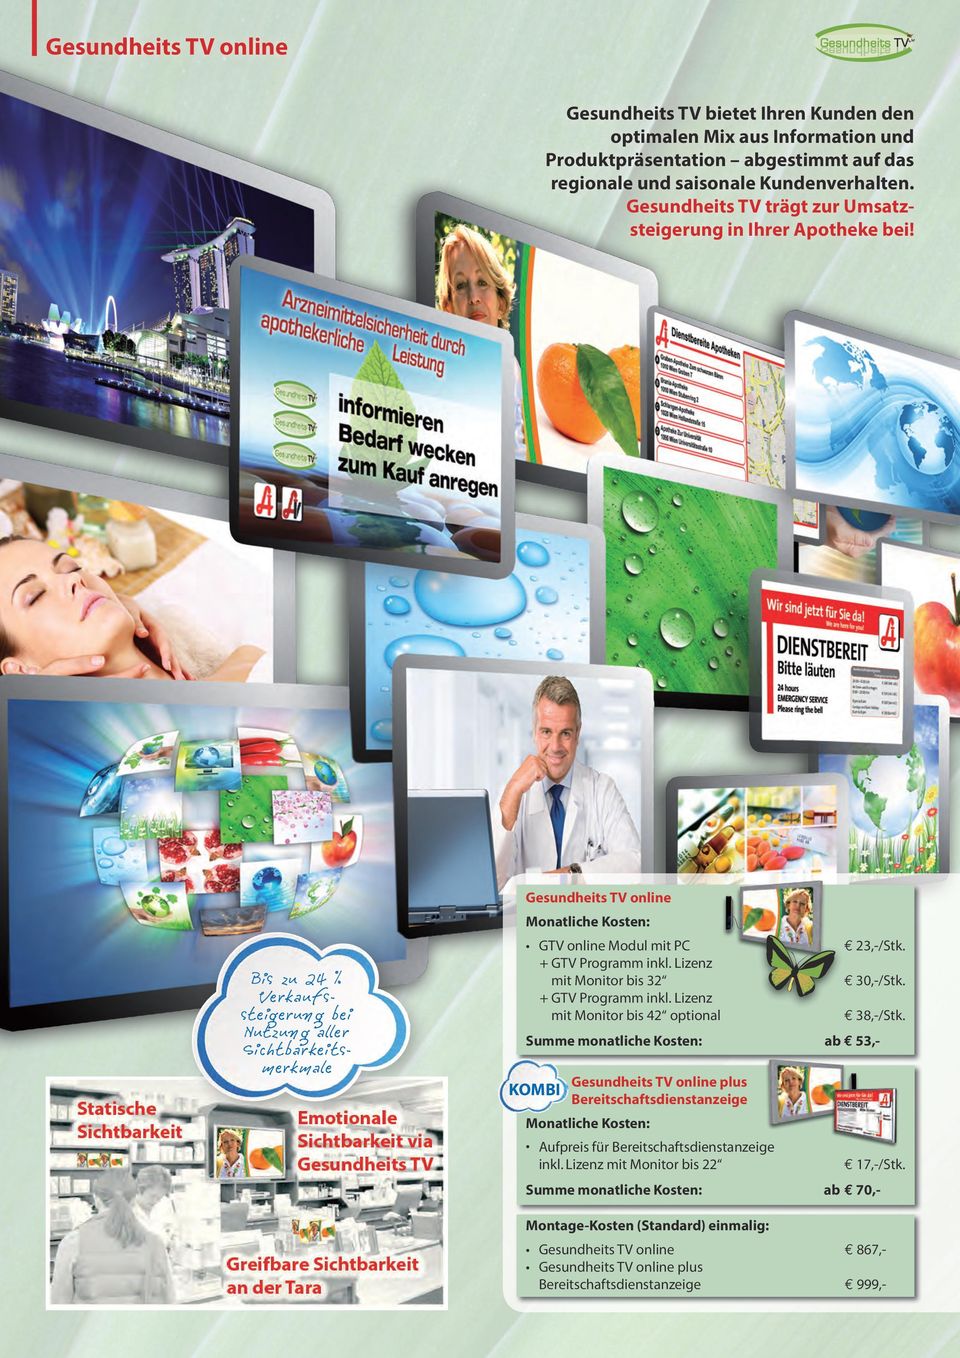 Bis zu 24 % Verkaufssteigerung bei Nutzung aller Sichtbarkeitsmerkmale Gesundheits TV online GTV online Modul mit PC + GTV Programm inkl. Lizenz mit Monitor bis 32 + GTV Programm inkl.